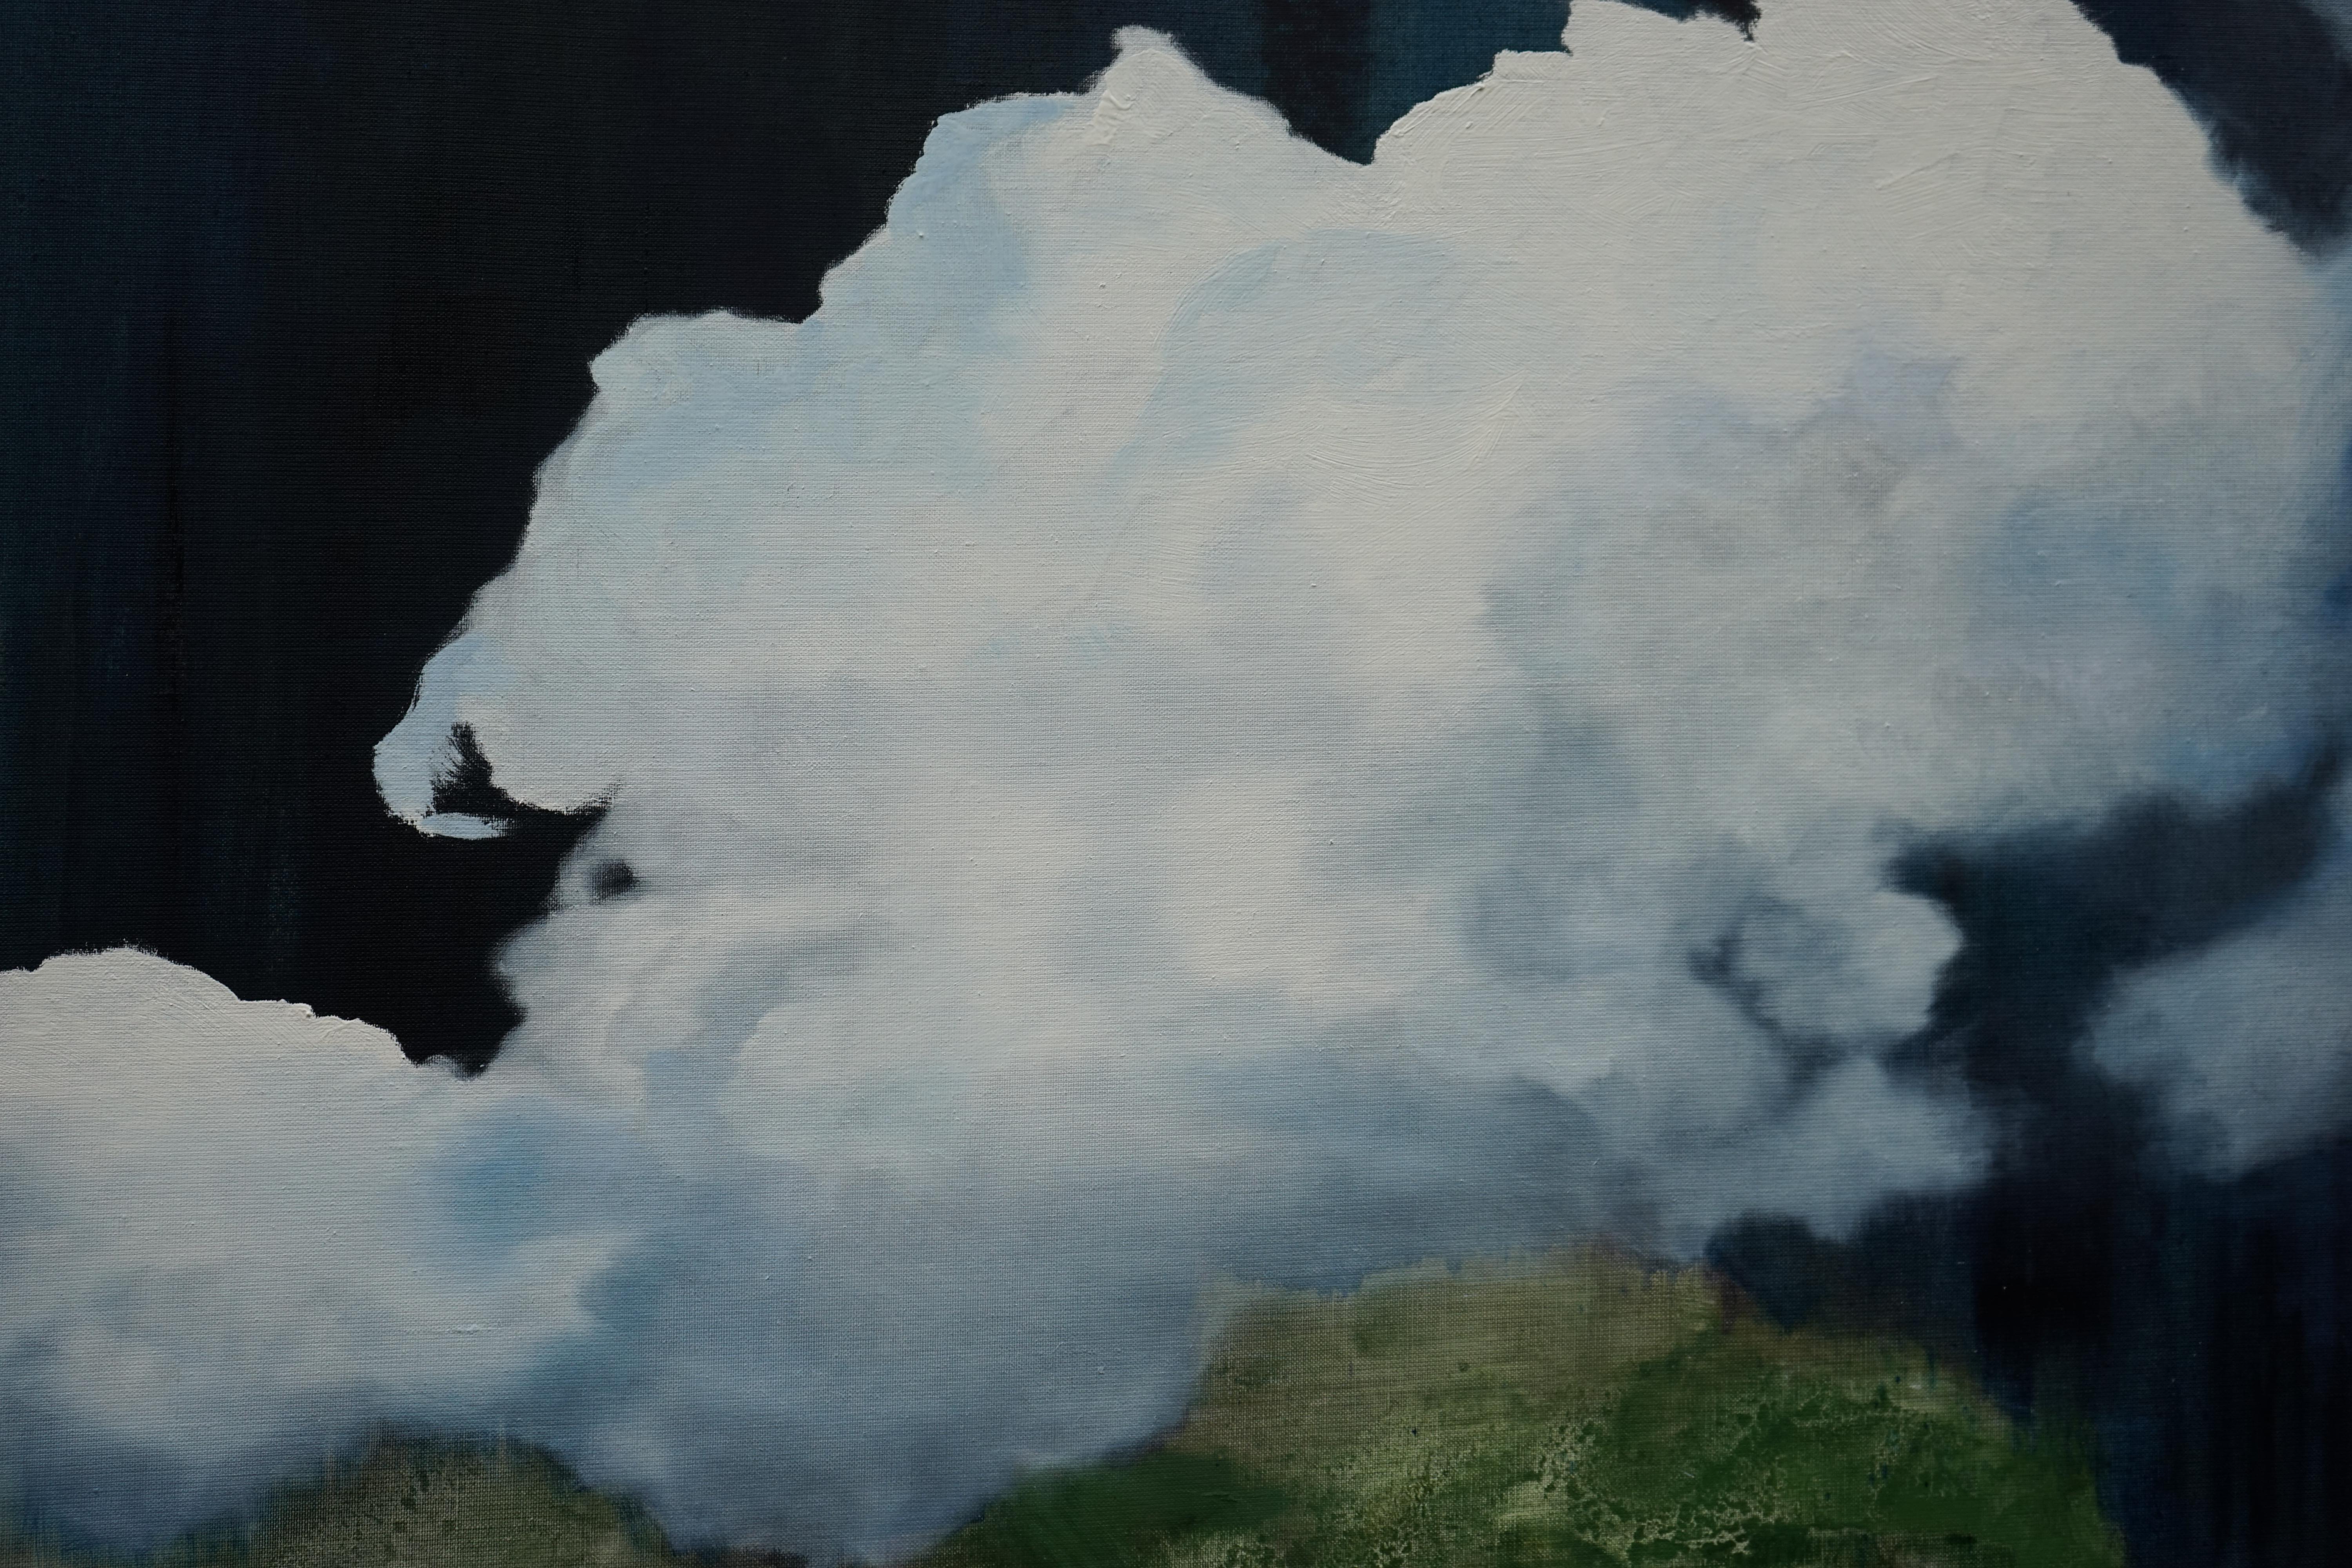 Escape - Large Format Contemporary Nature Oil Painting, Landscape, Mountains - Black Landscape Painting by Aleksandra Batura